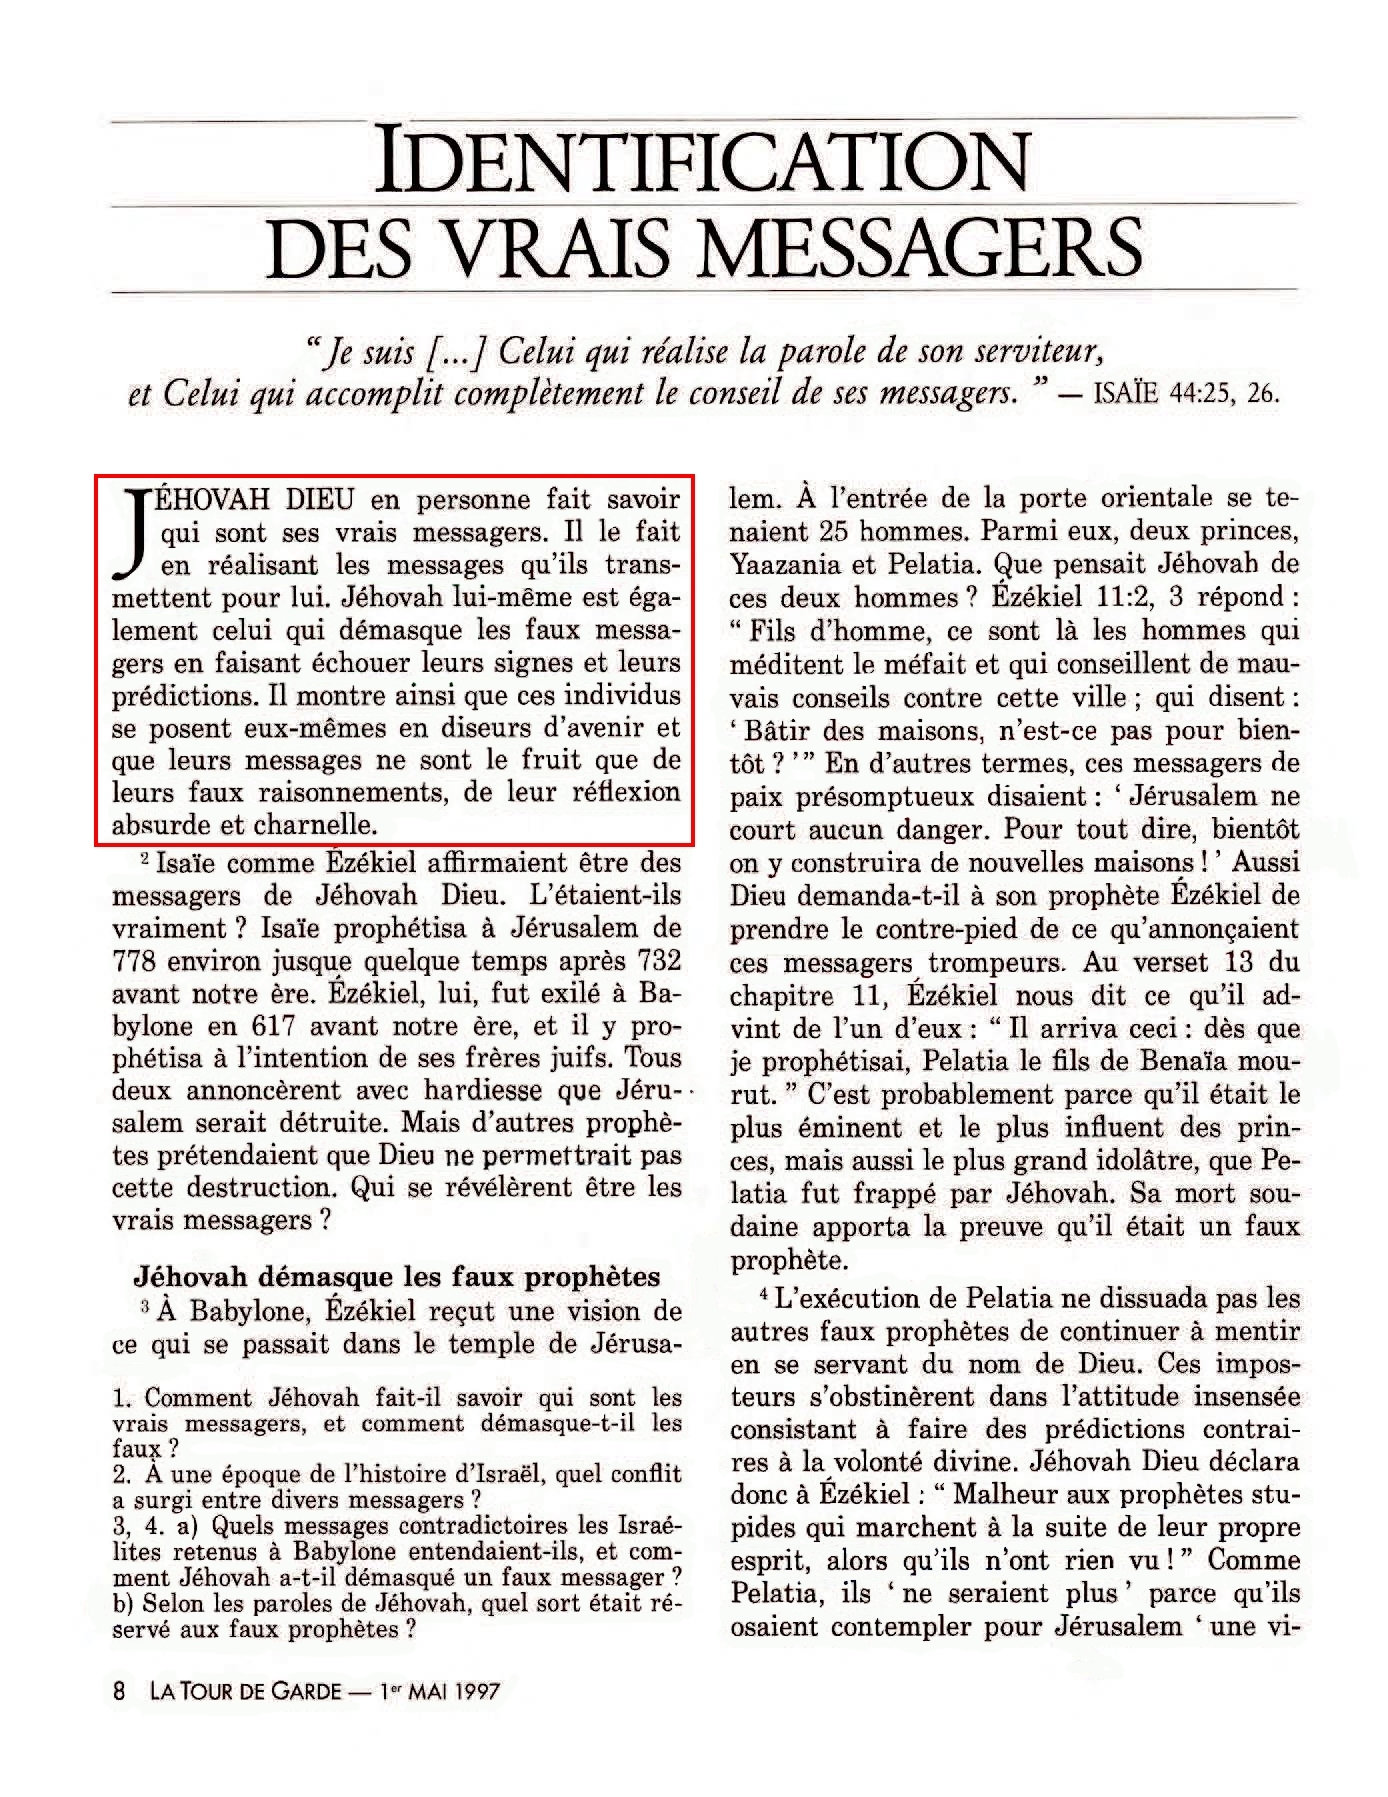 Les fausses prophéties par la Société watch tower - Page 4 Eii3